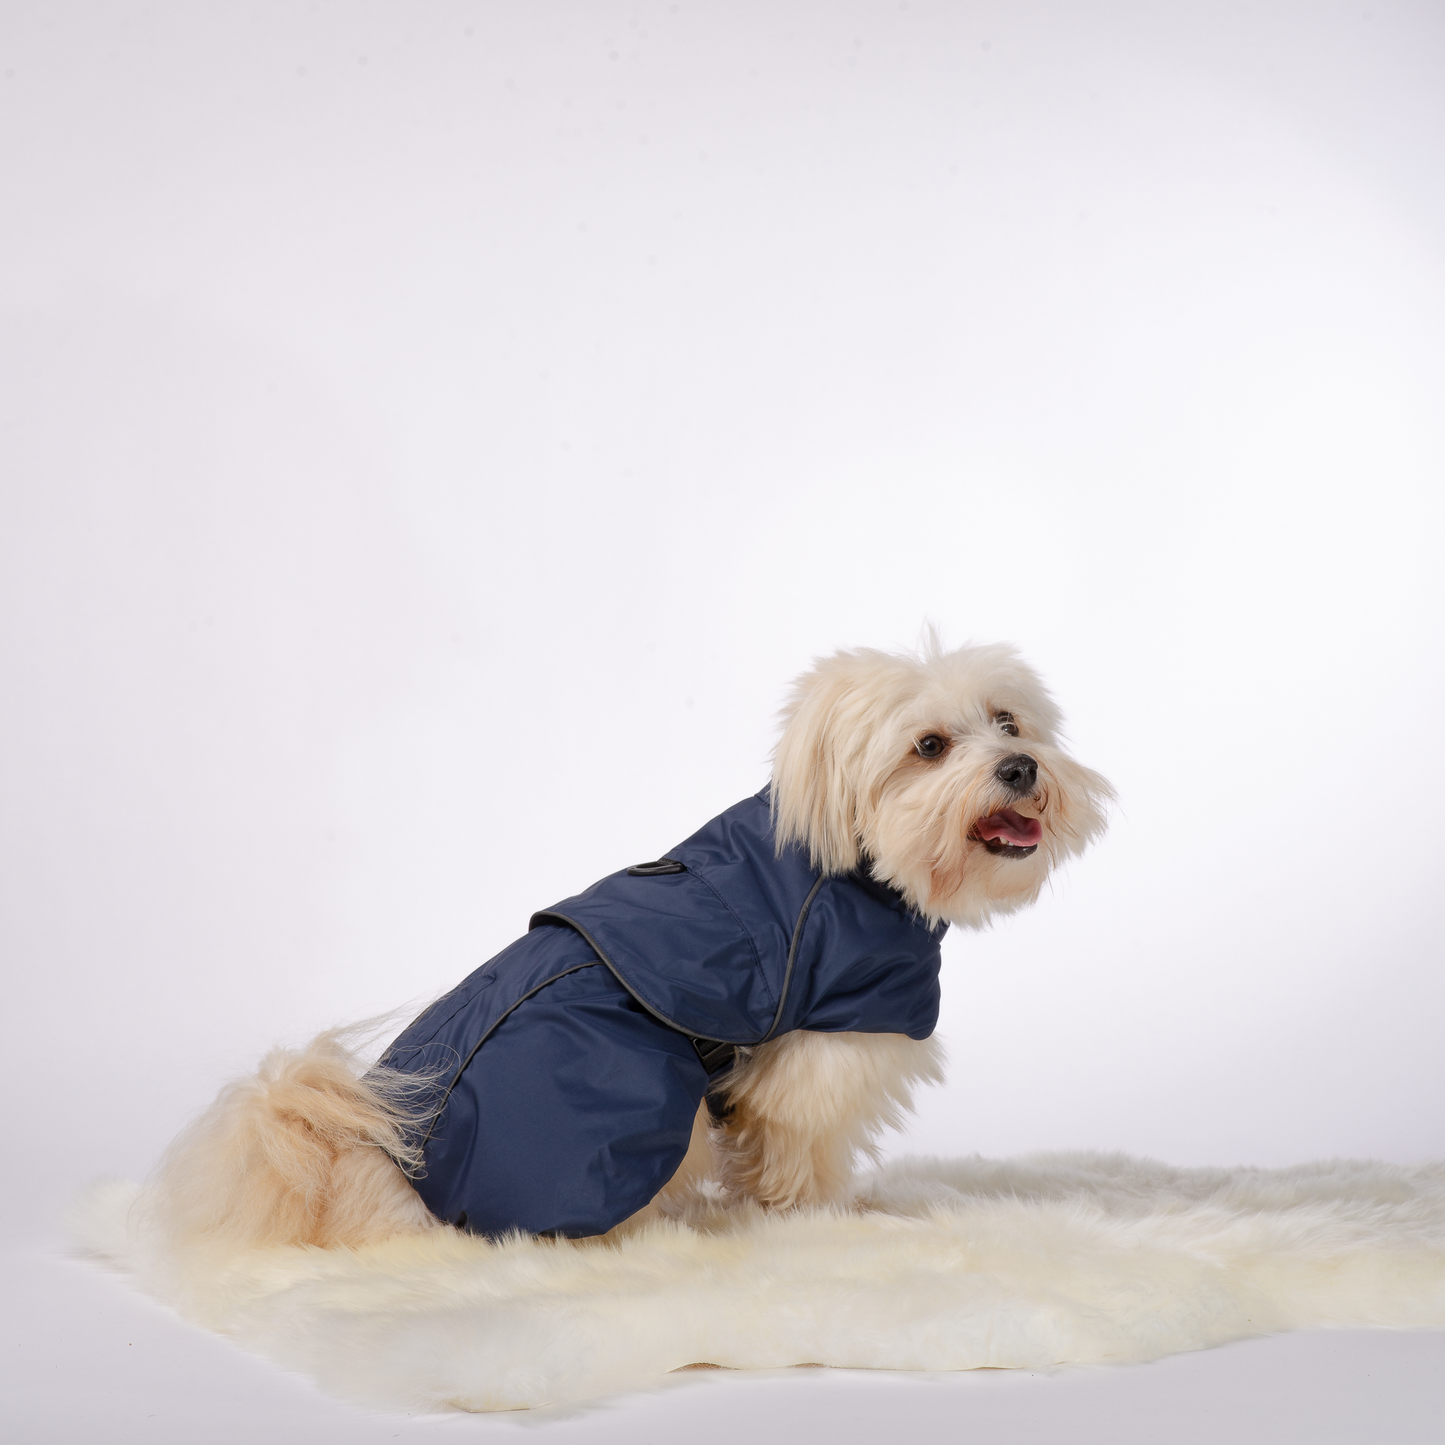 2 in 1 valjas takki koirille, takaa sininen. Harness dog coat, back picture navy blue